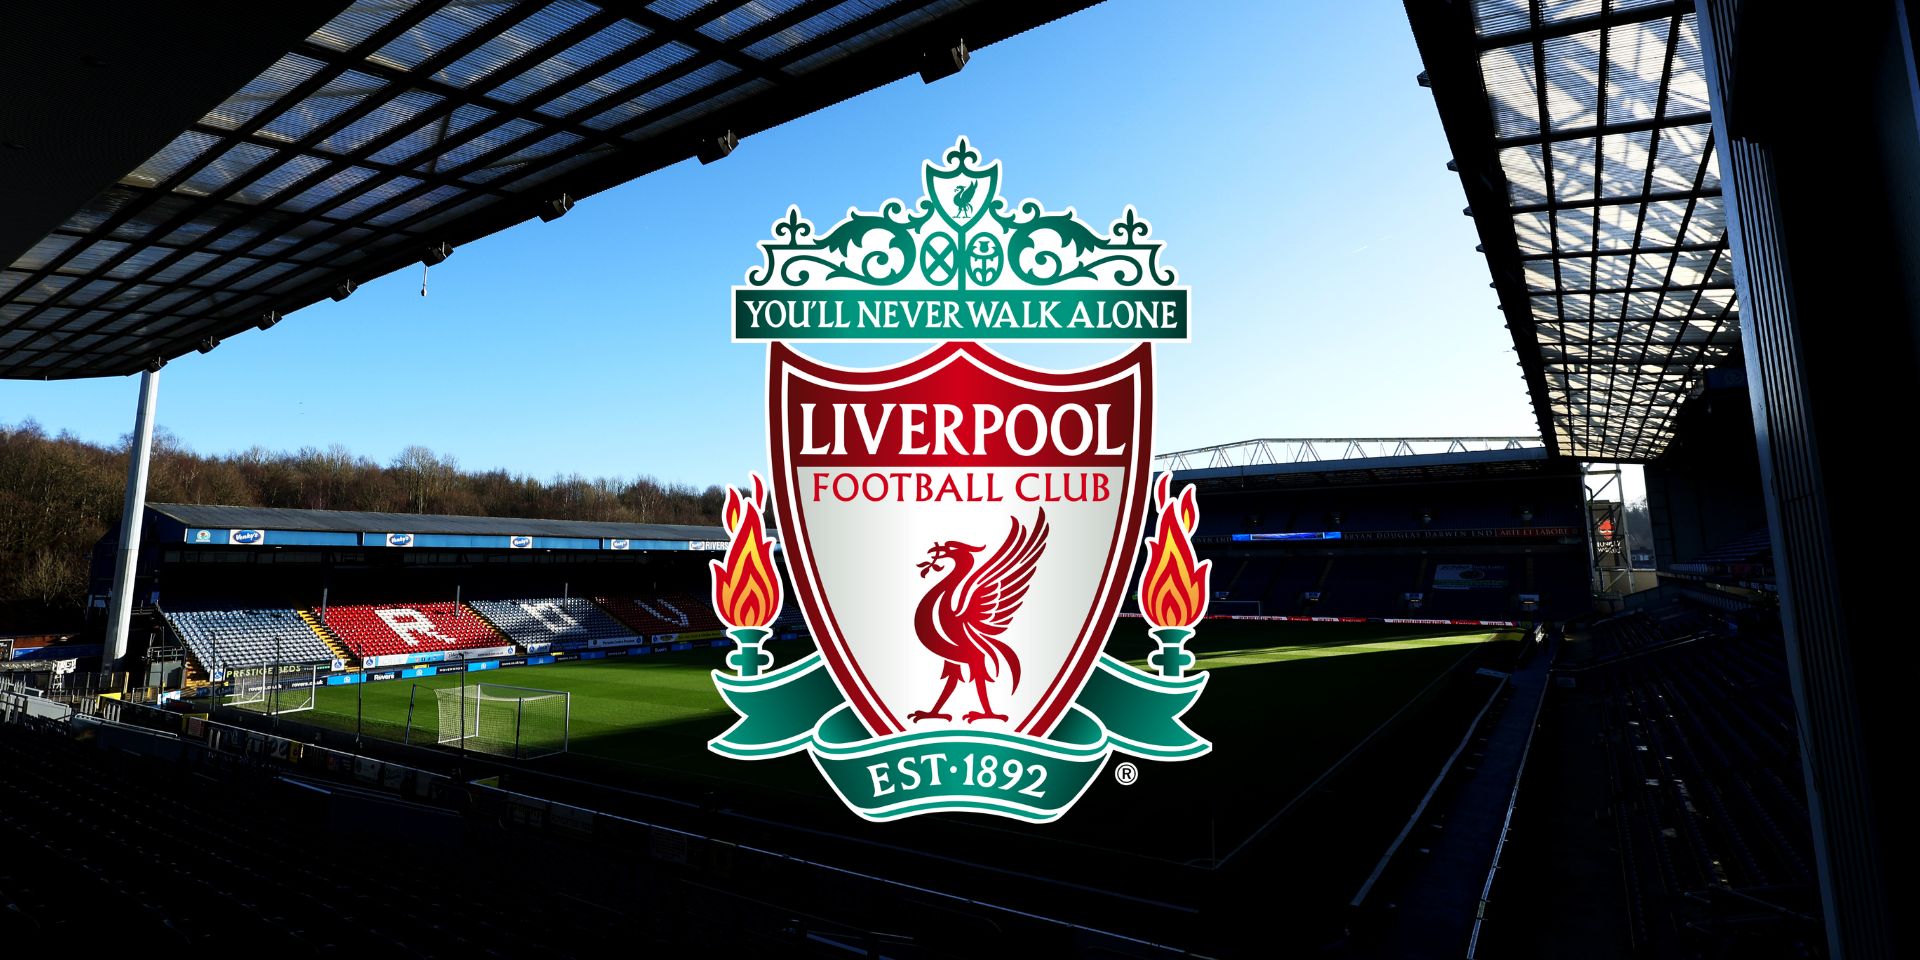 L'exjugador del Liverpool demana als propietaris de l'antic equip "VEN EL CLUB"